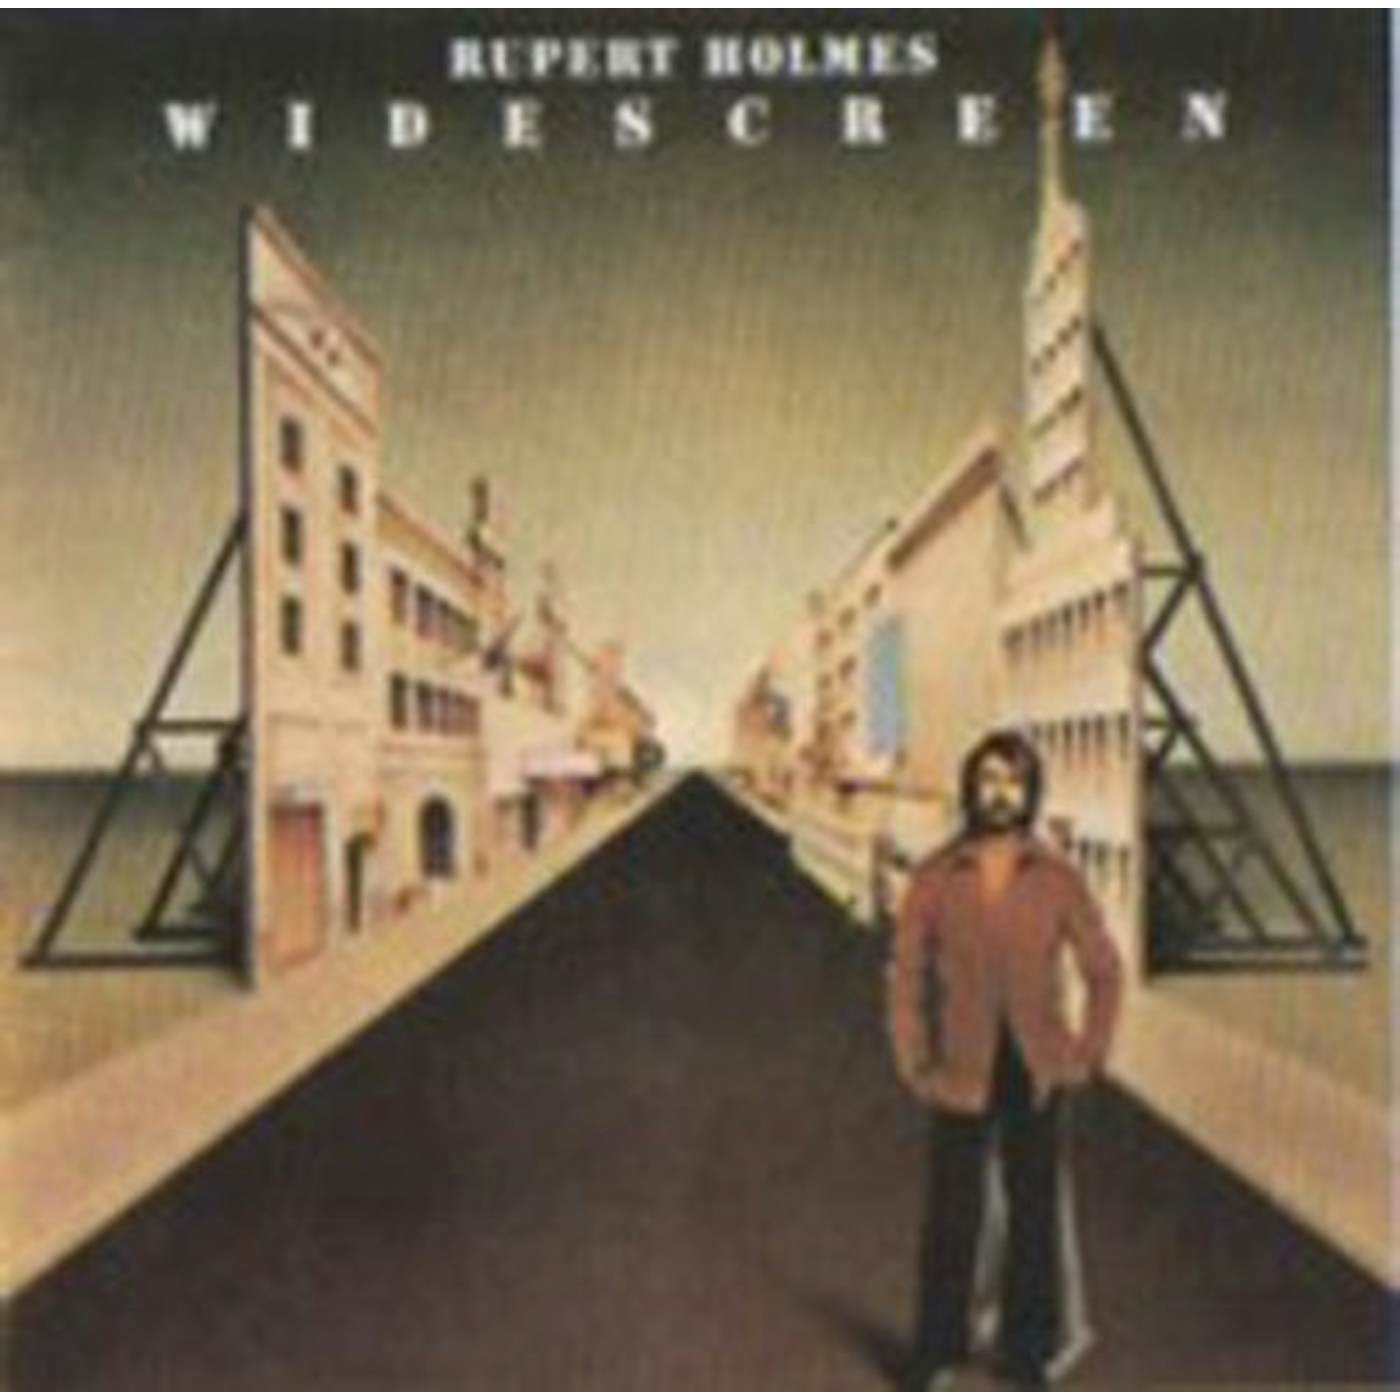 Rupert Holmes WIDE SCREEN CD